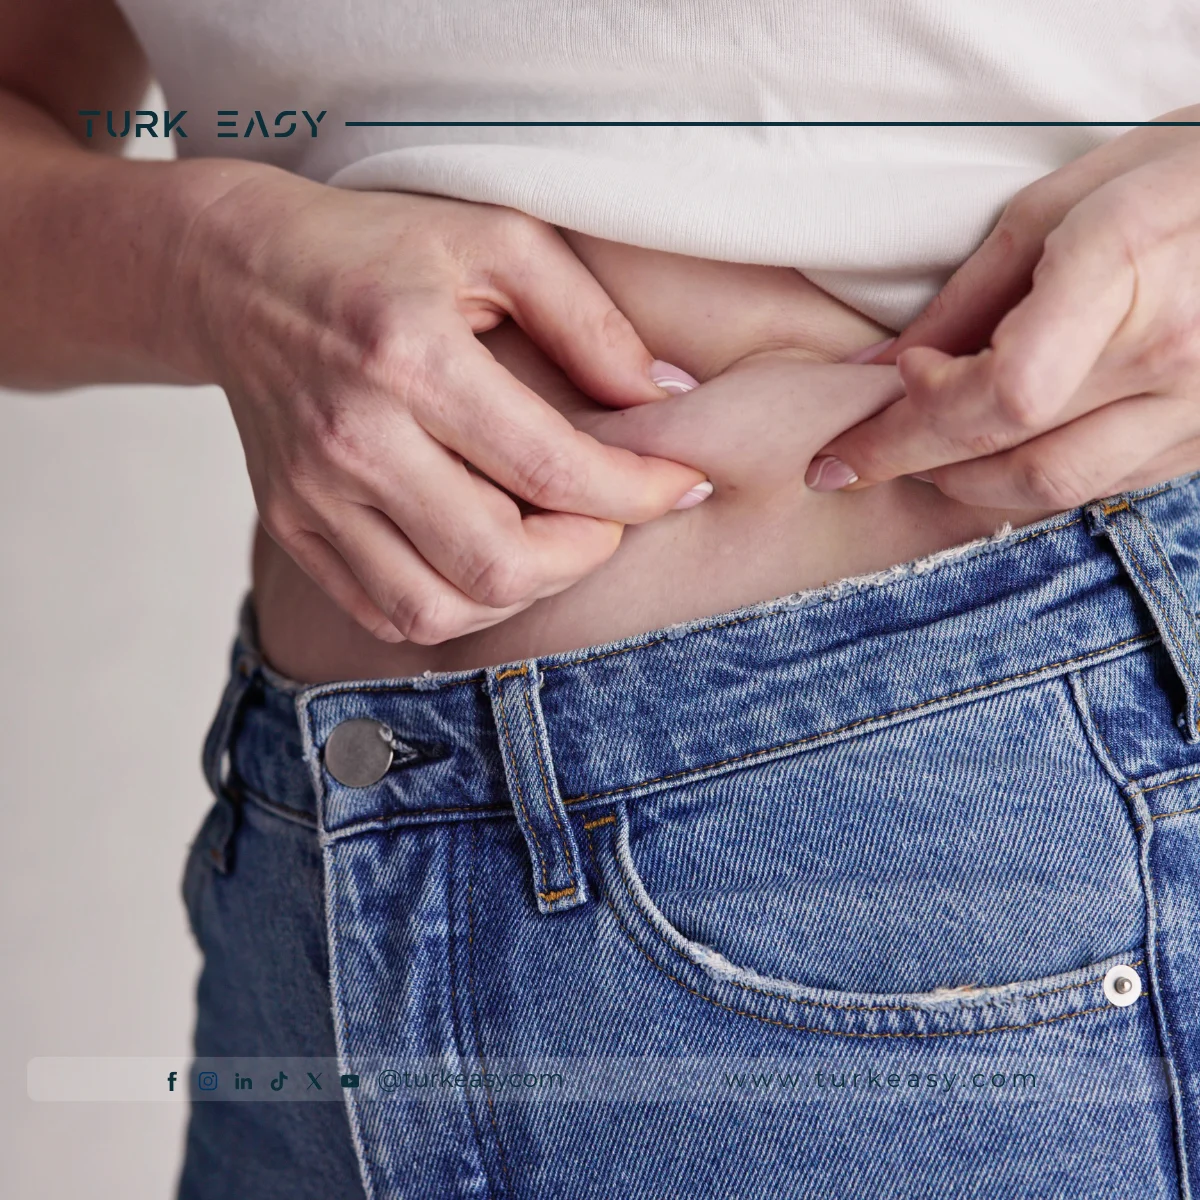 Liposuccion abdominale : Procédures et conseils dorés pour la récupération